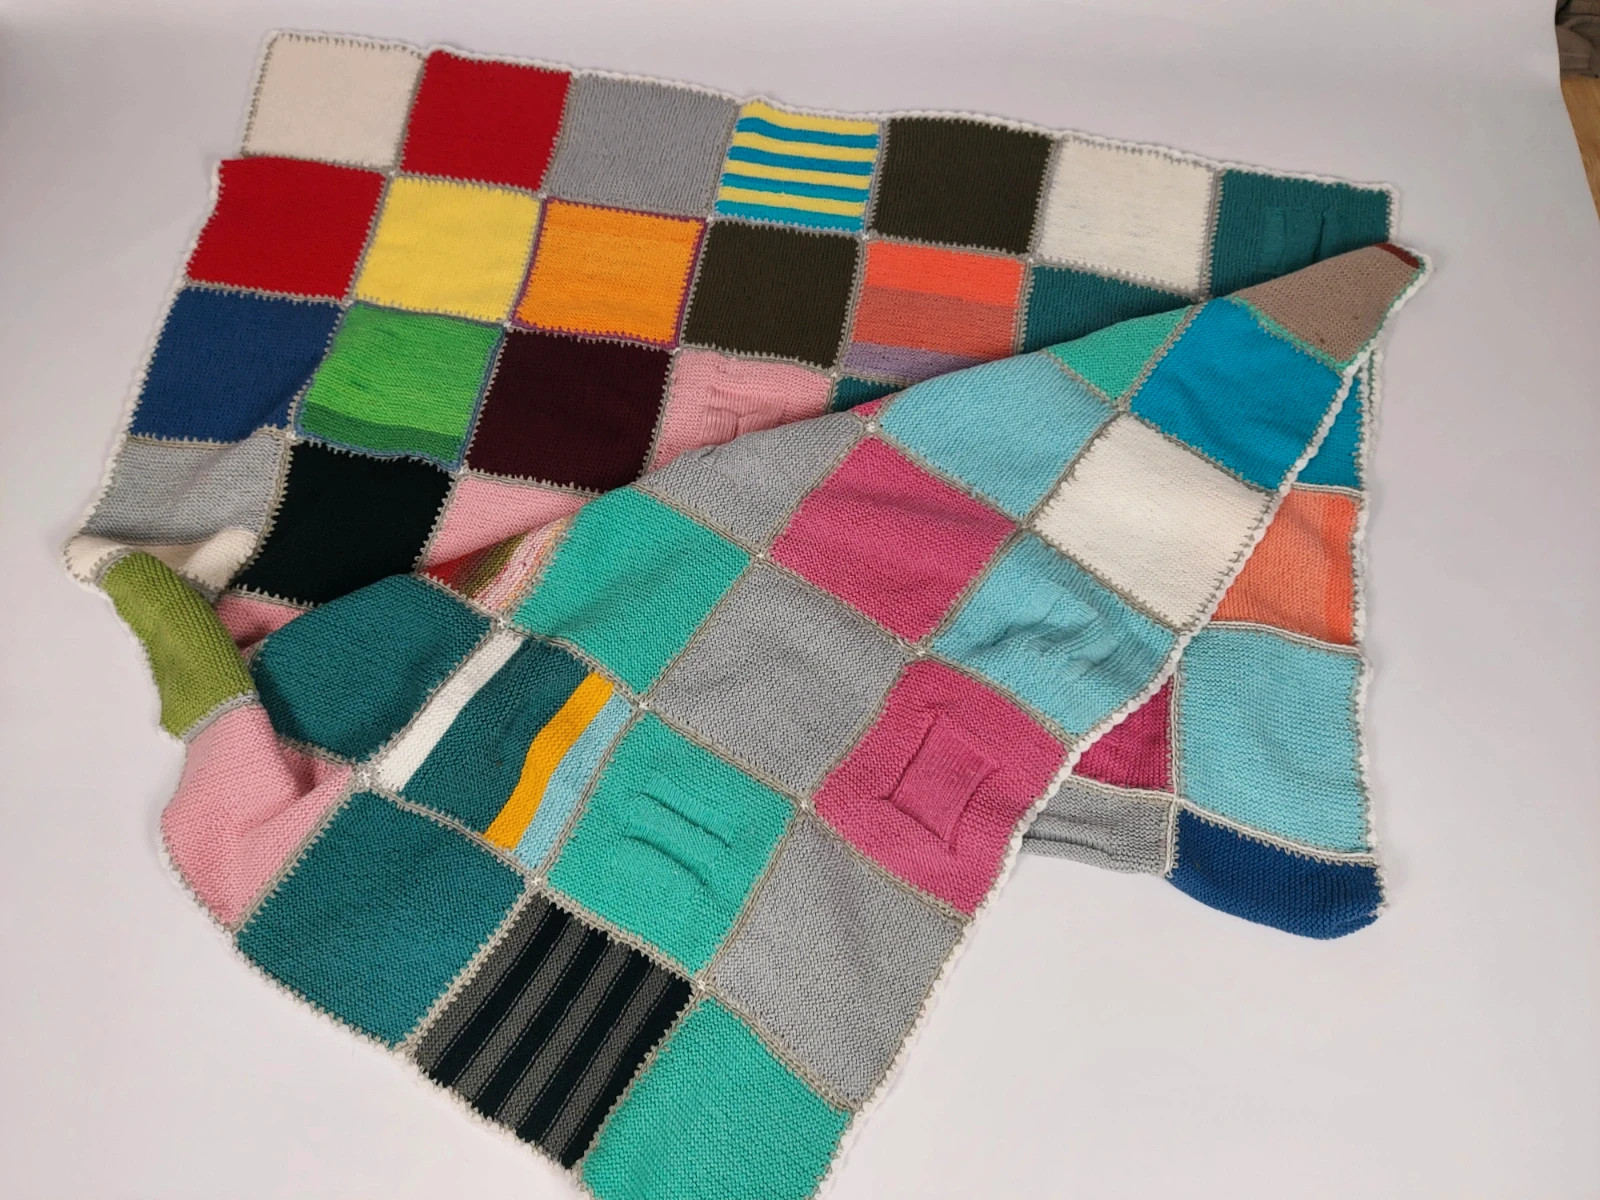 Nowy duzy koc narzuta kolorowa wielobarwna patchwork handmade 160 cm x 200 cm